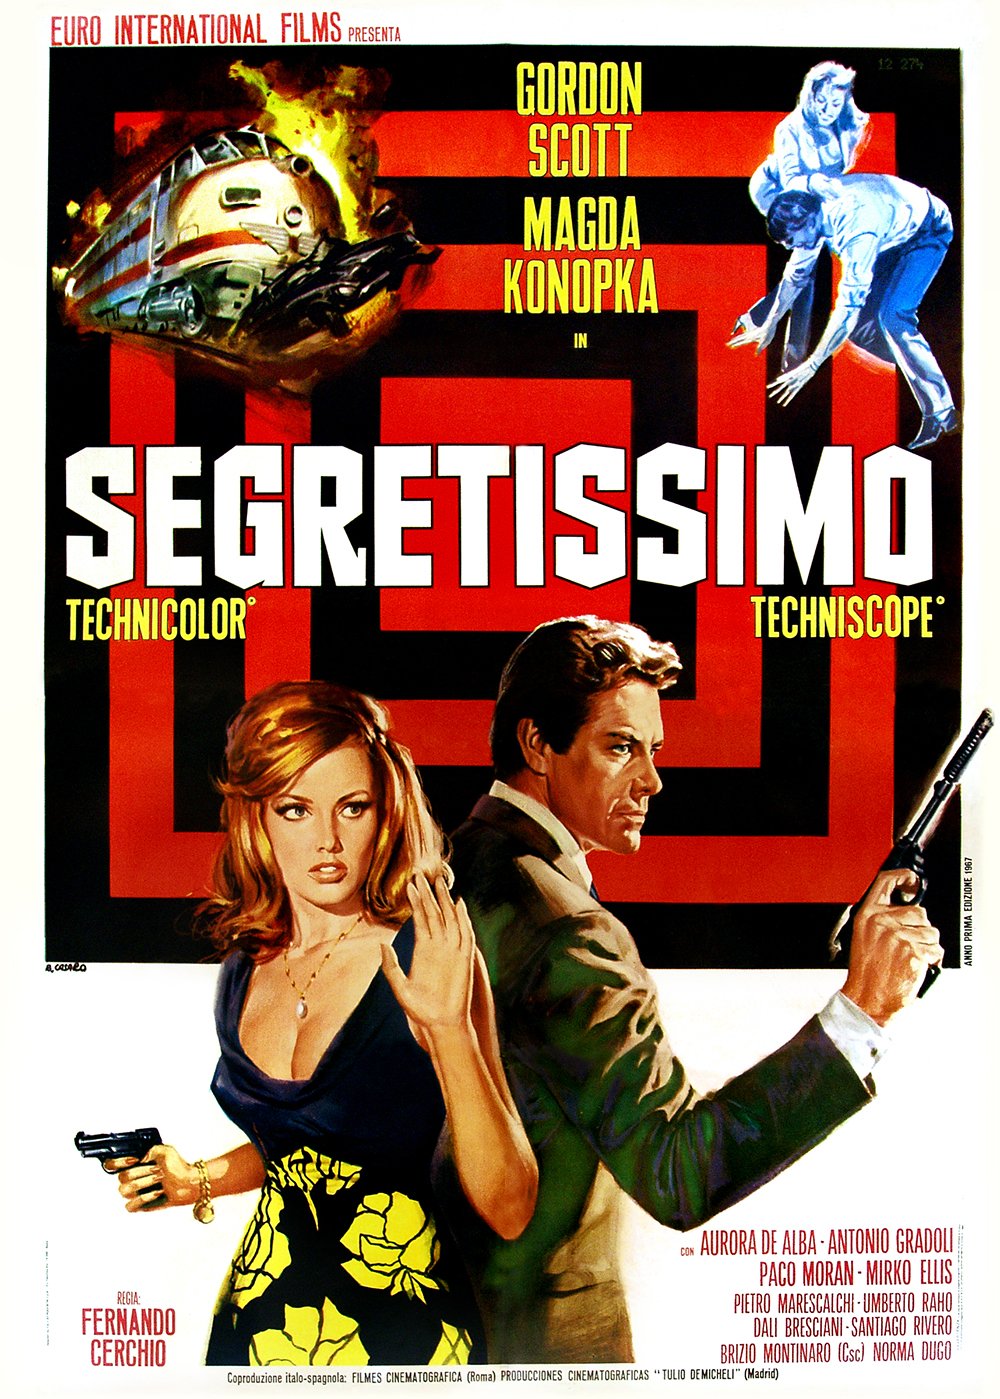 Segretissimo (1967) Screenshot 1 